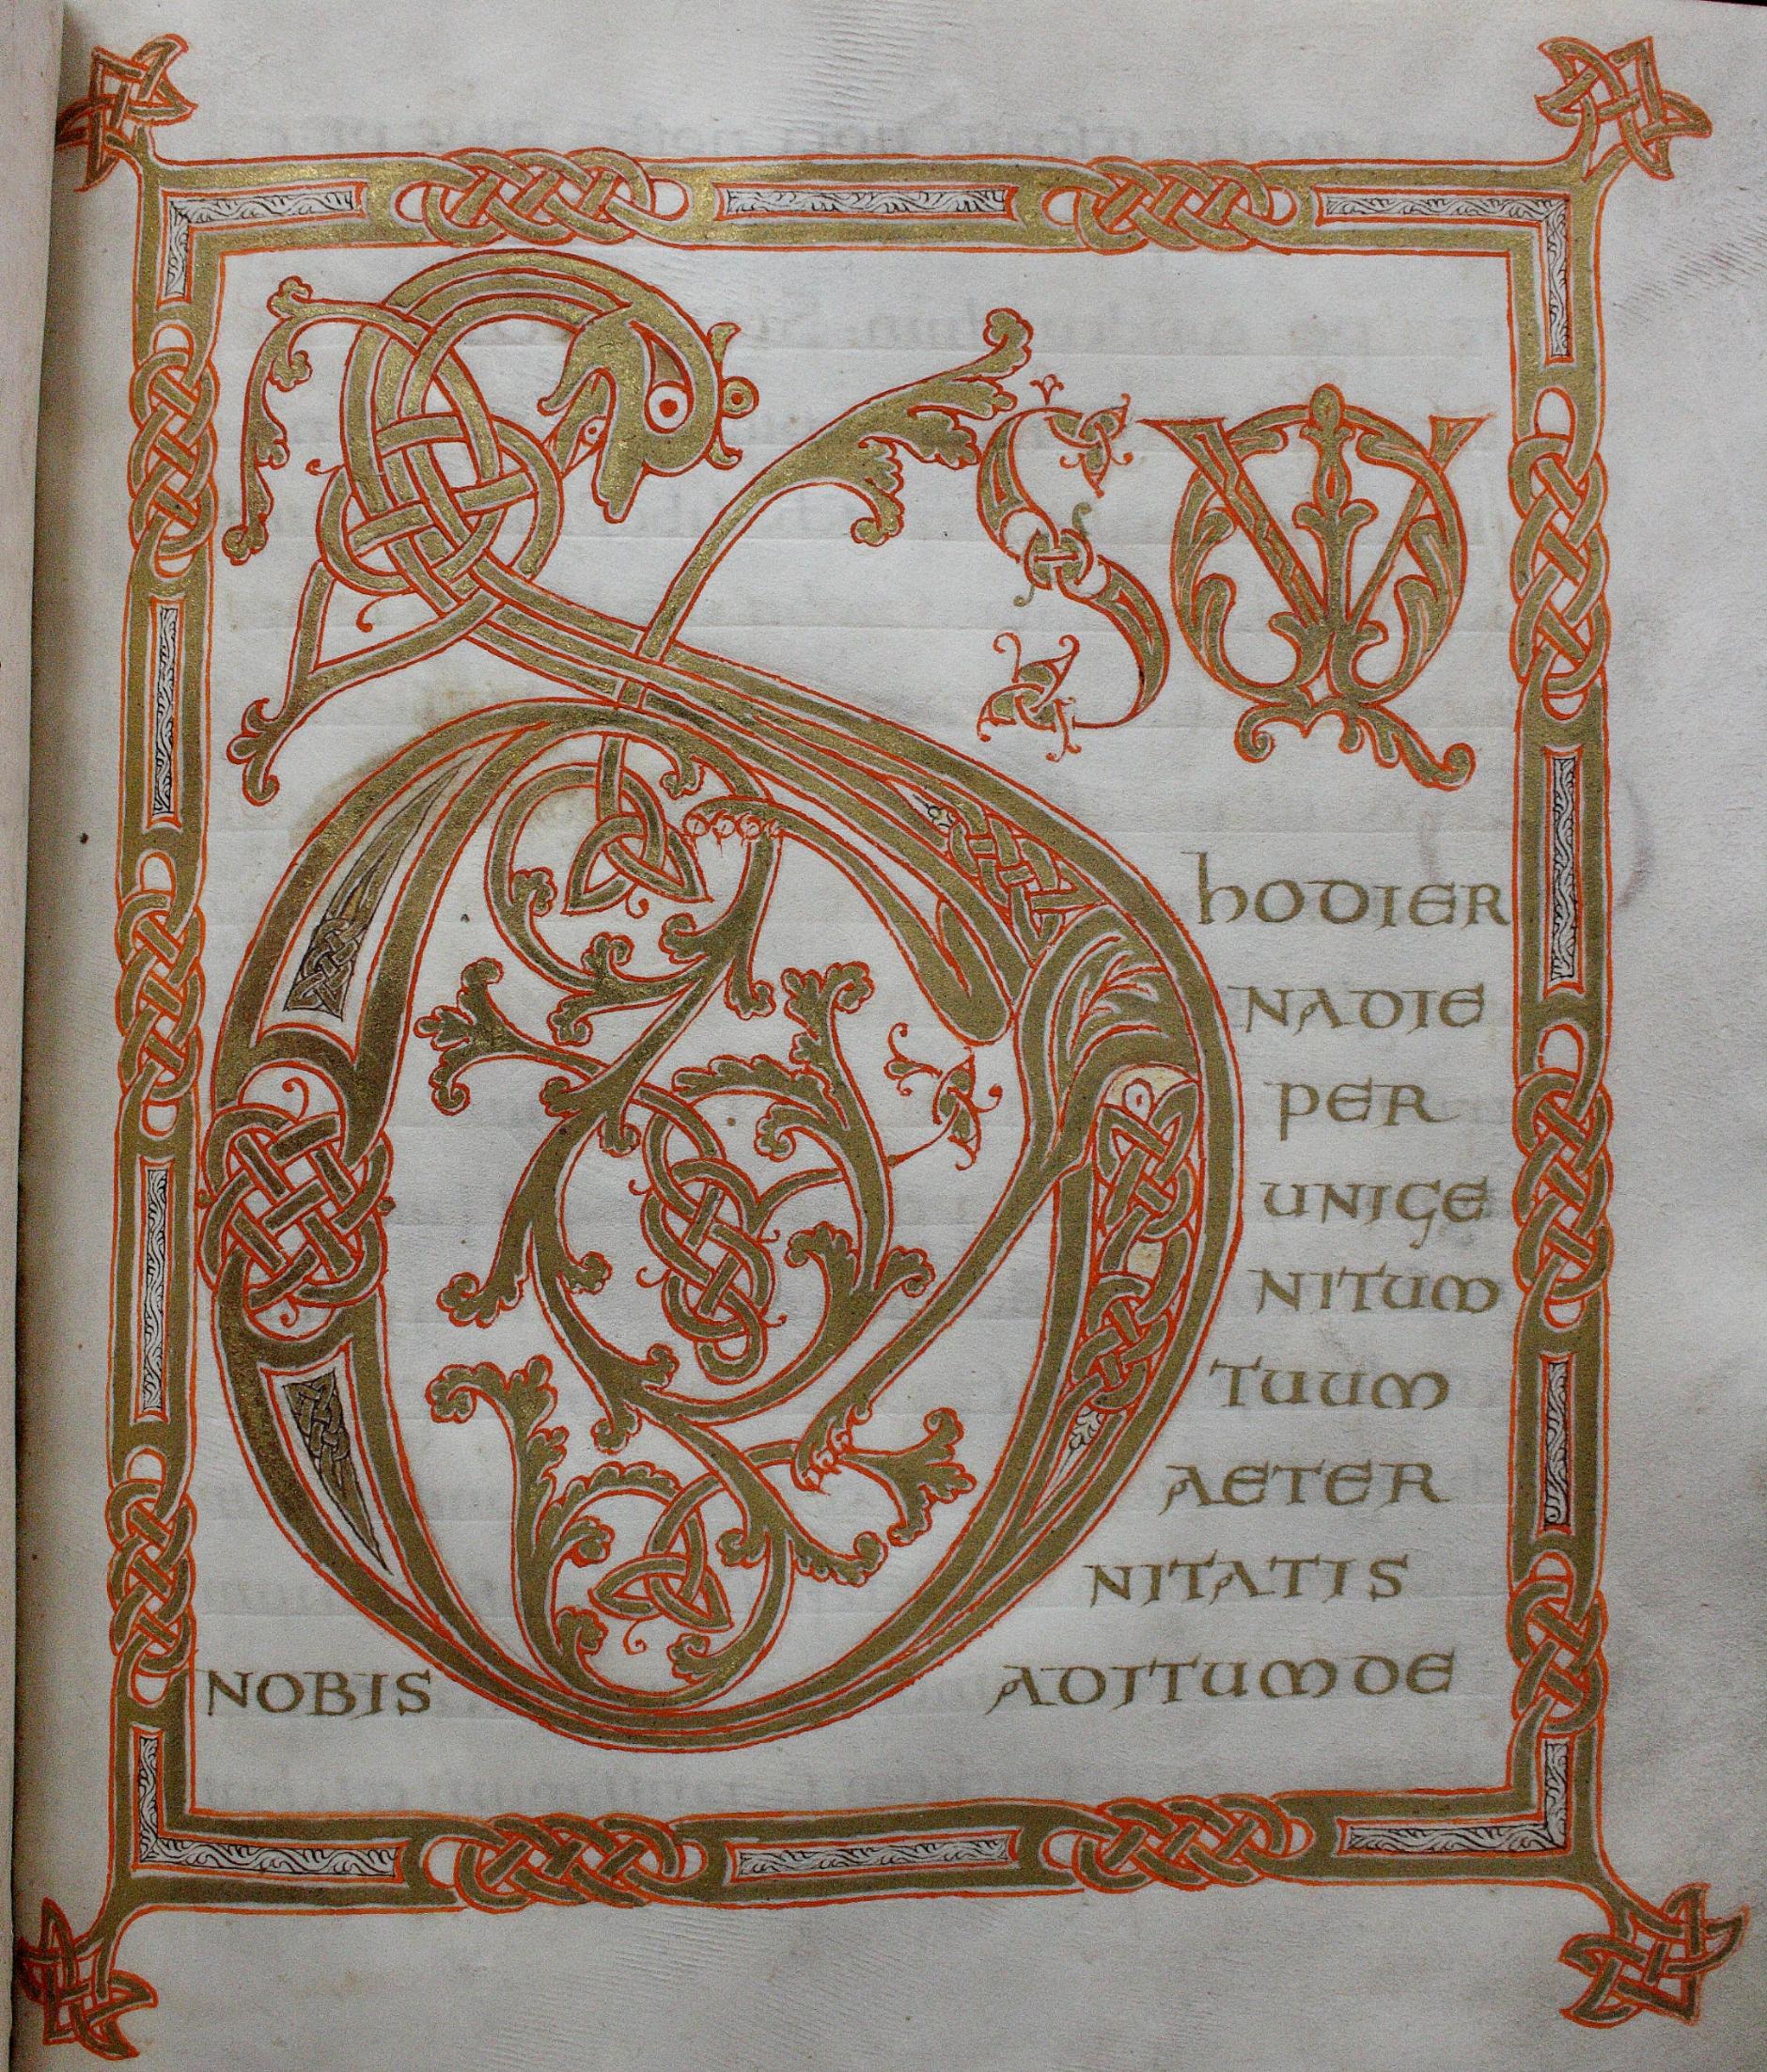 Seite aus dem Sakramentar aus Mainz, St. Alban - 9./10. Jh. (c) Martinus-Bibliothek